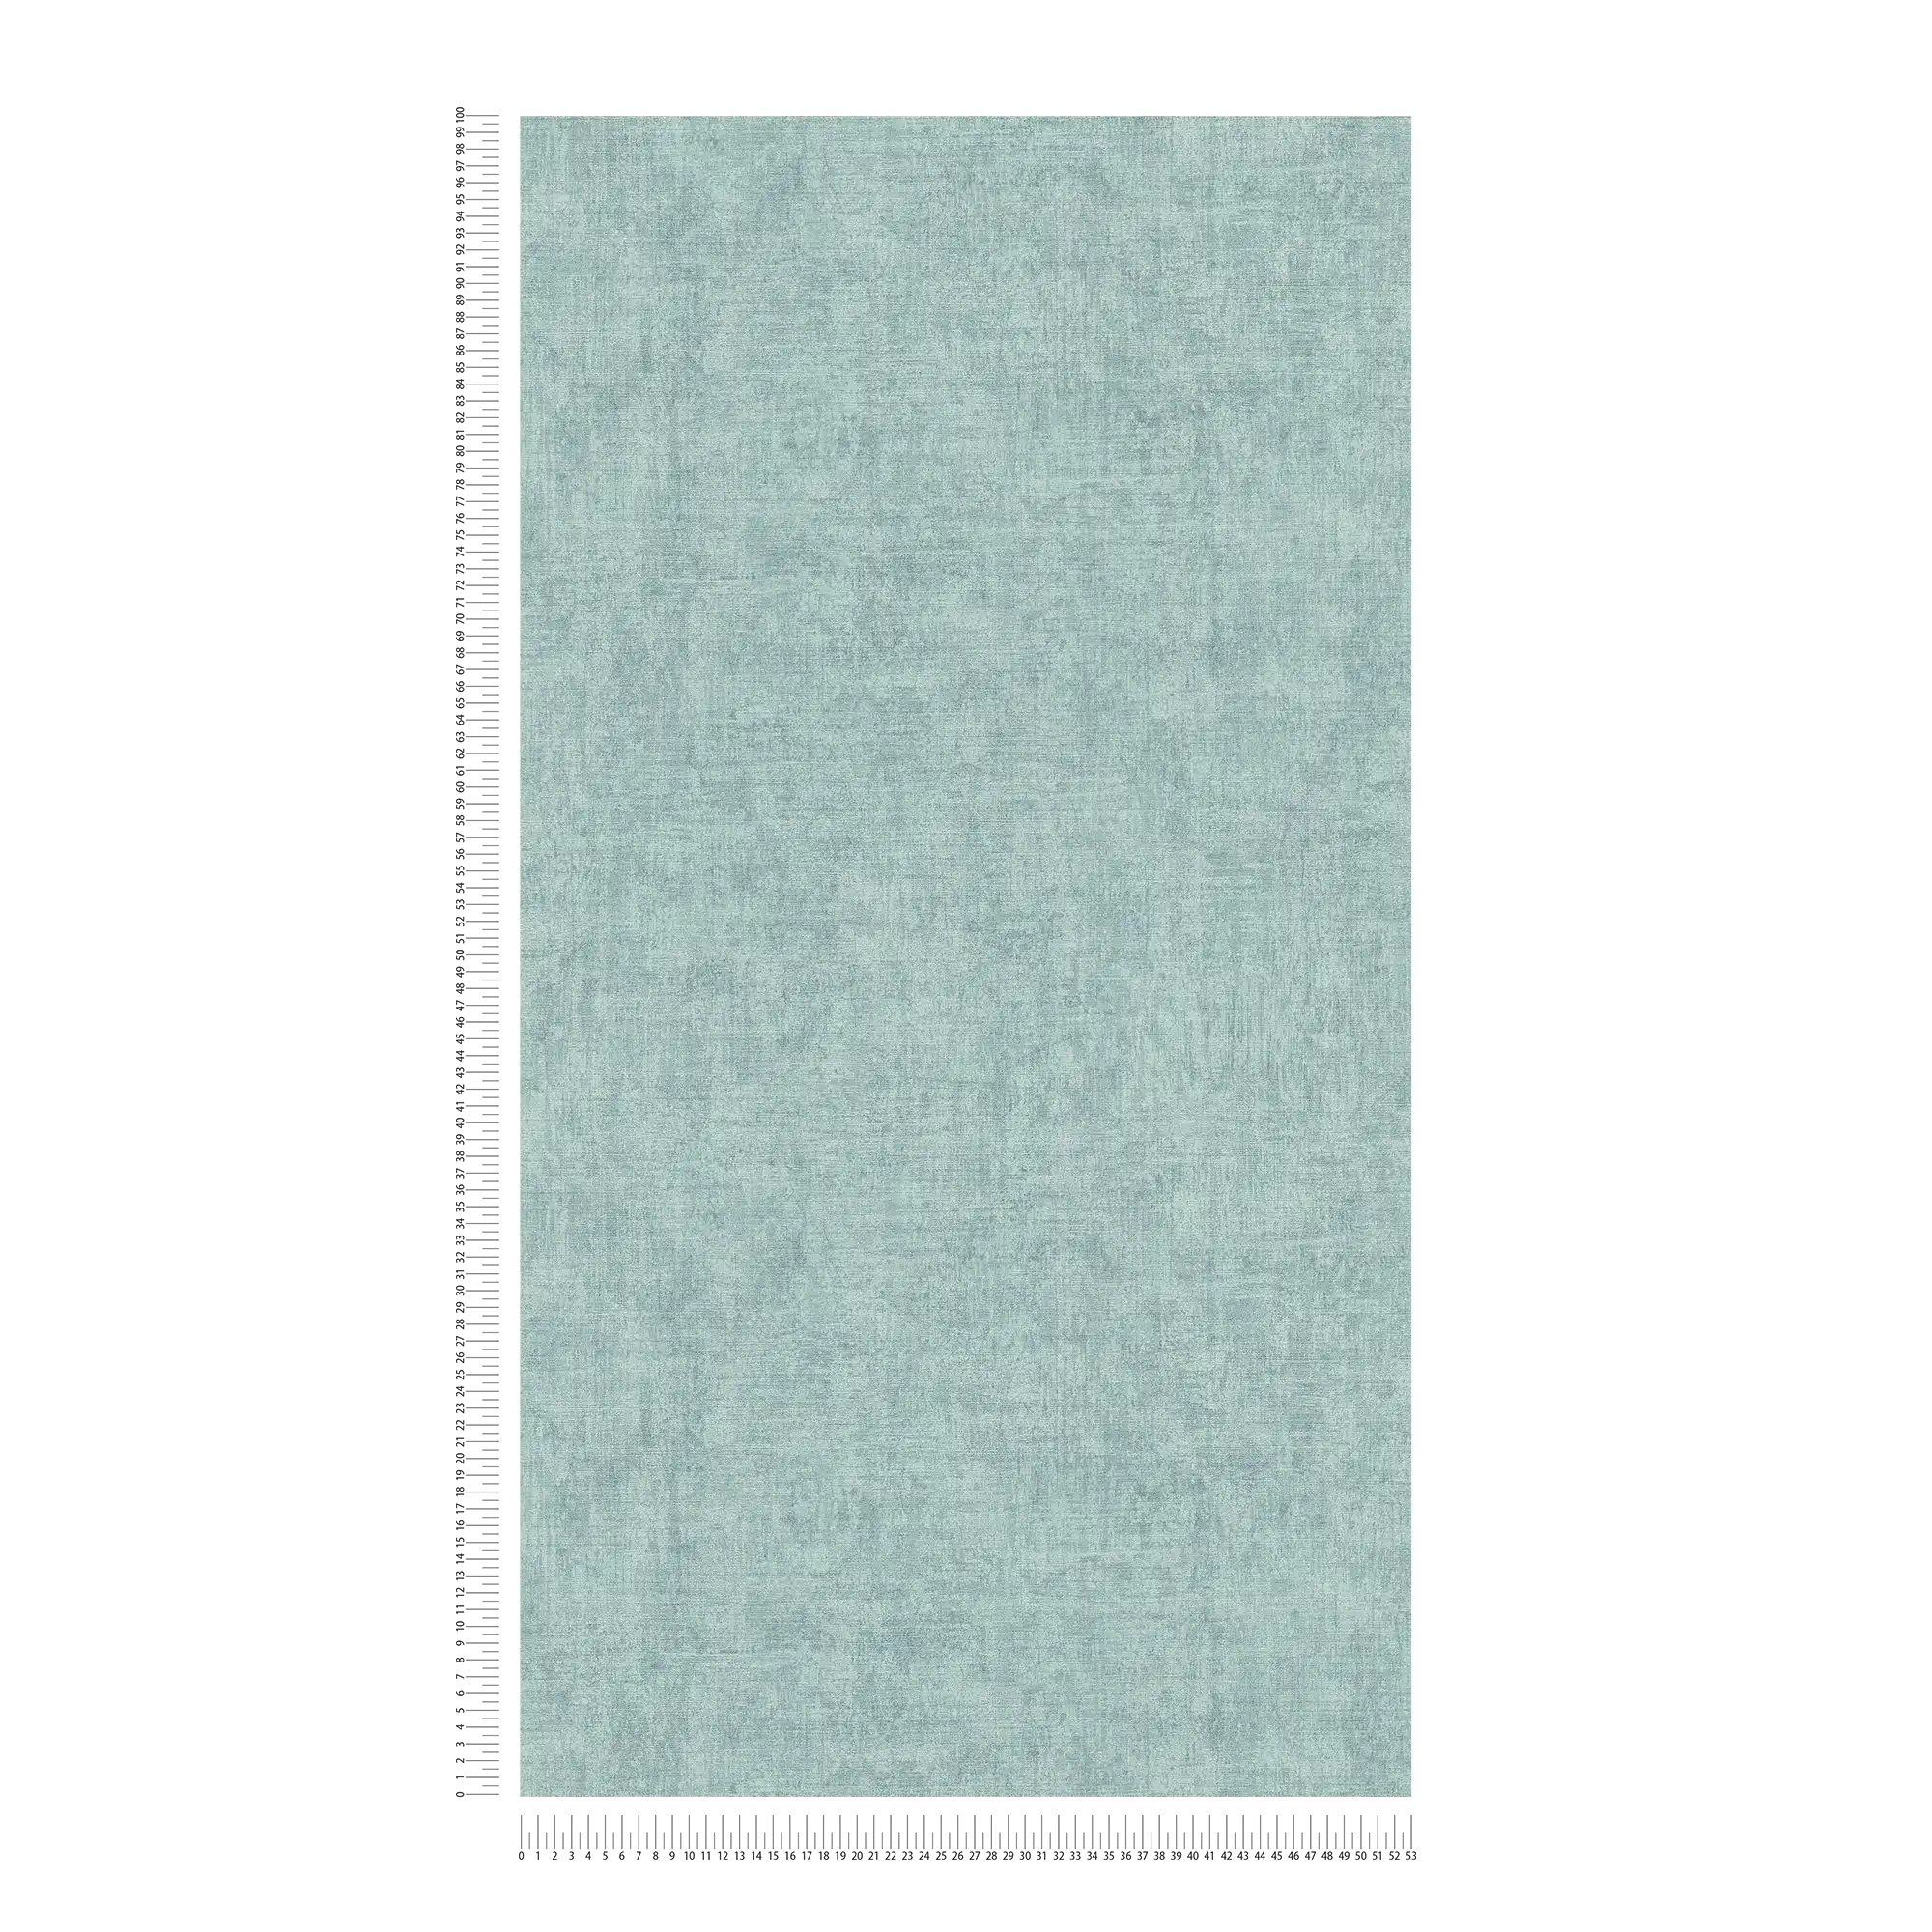             Papel pintado no tejido liso, moteado, con textura - azul
        